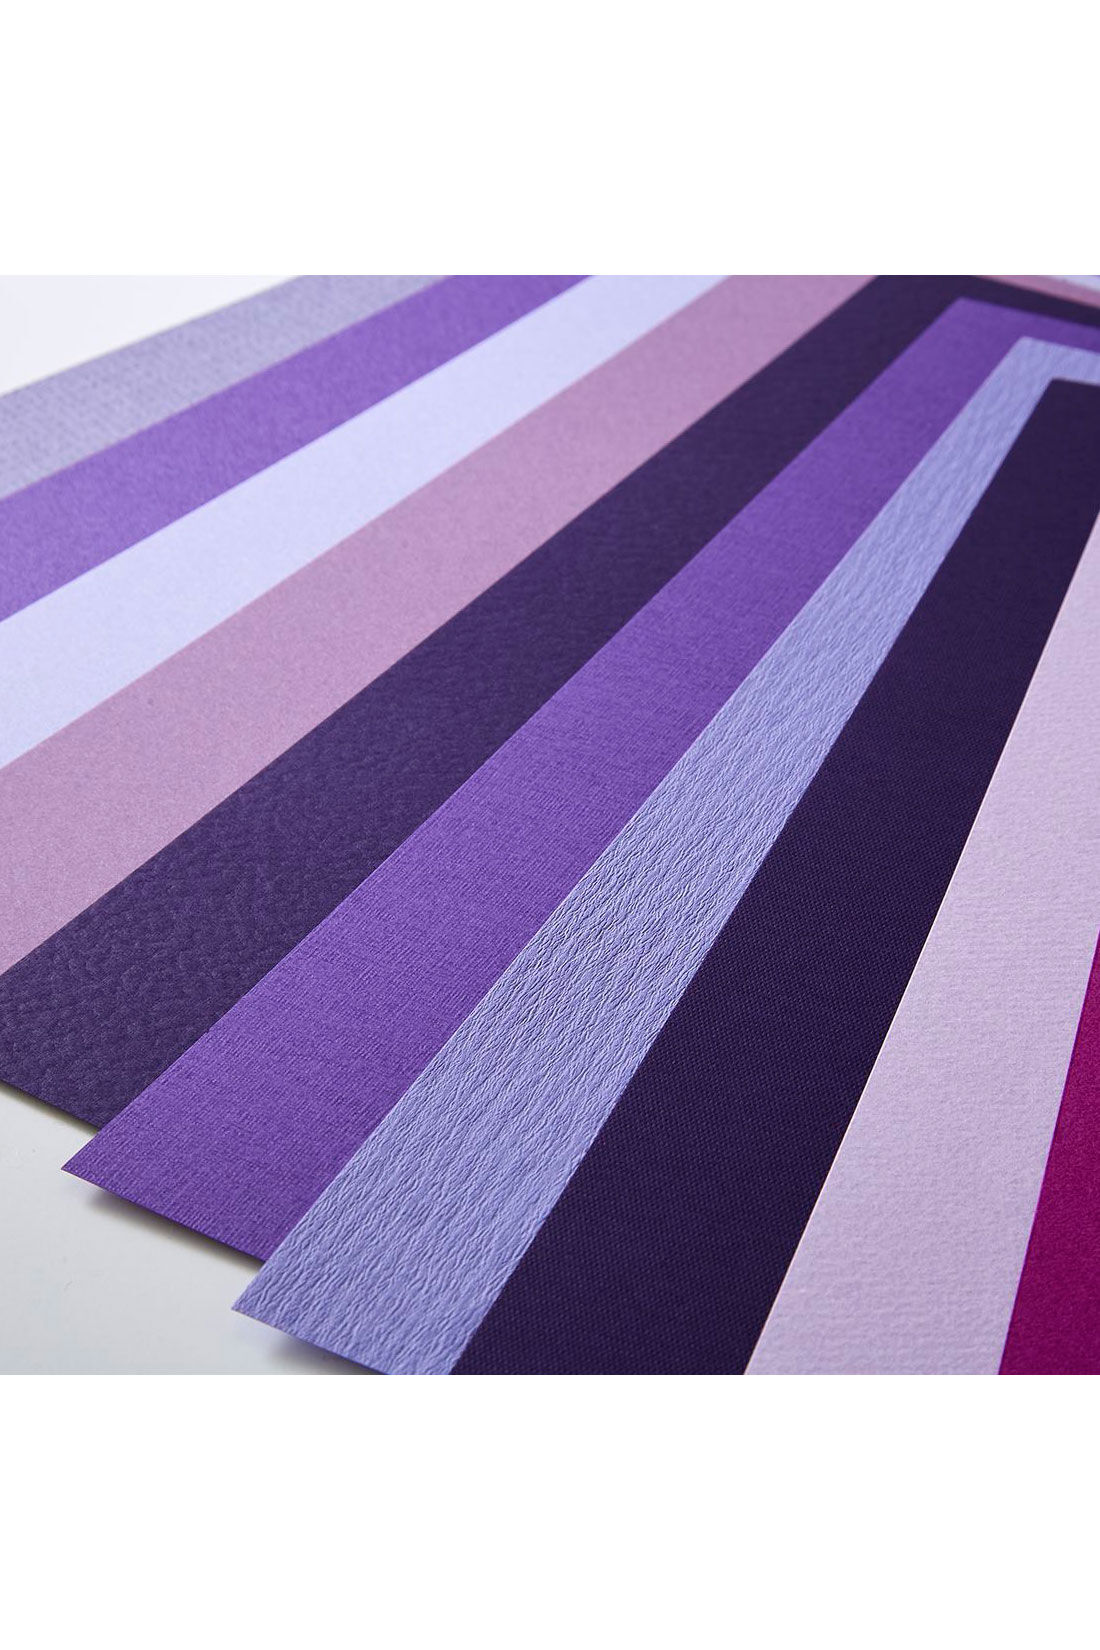 OSYAIRO|OSYAIRO 紙の専門商社竹尾が選ぶ　色を楽しむ紙セットの会〈紫〉|色味や地模様もいろいろなので、1枚1枚違った紙の表情が楽しめます。